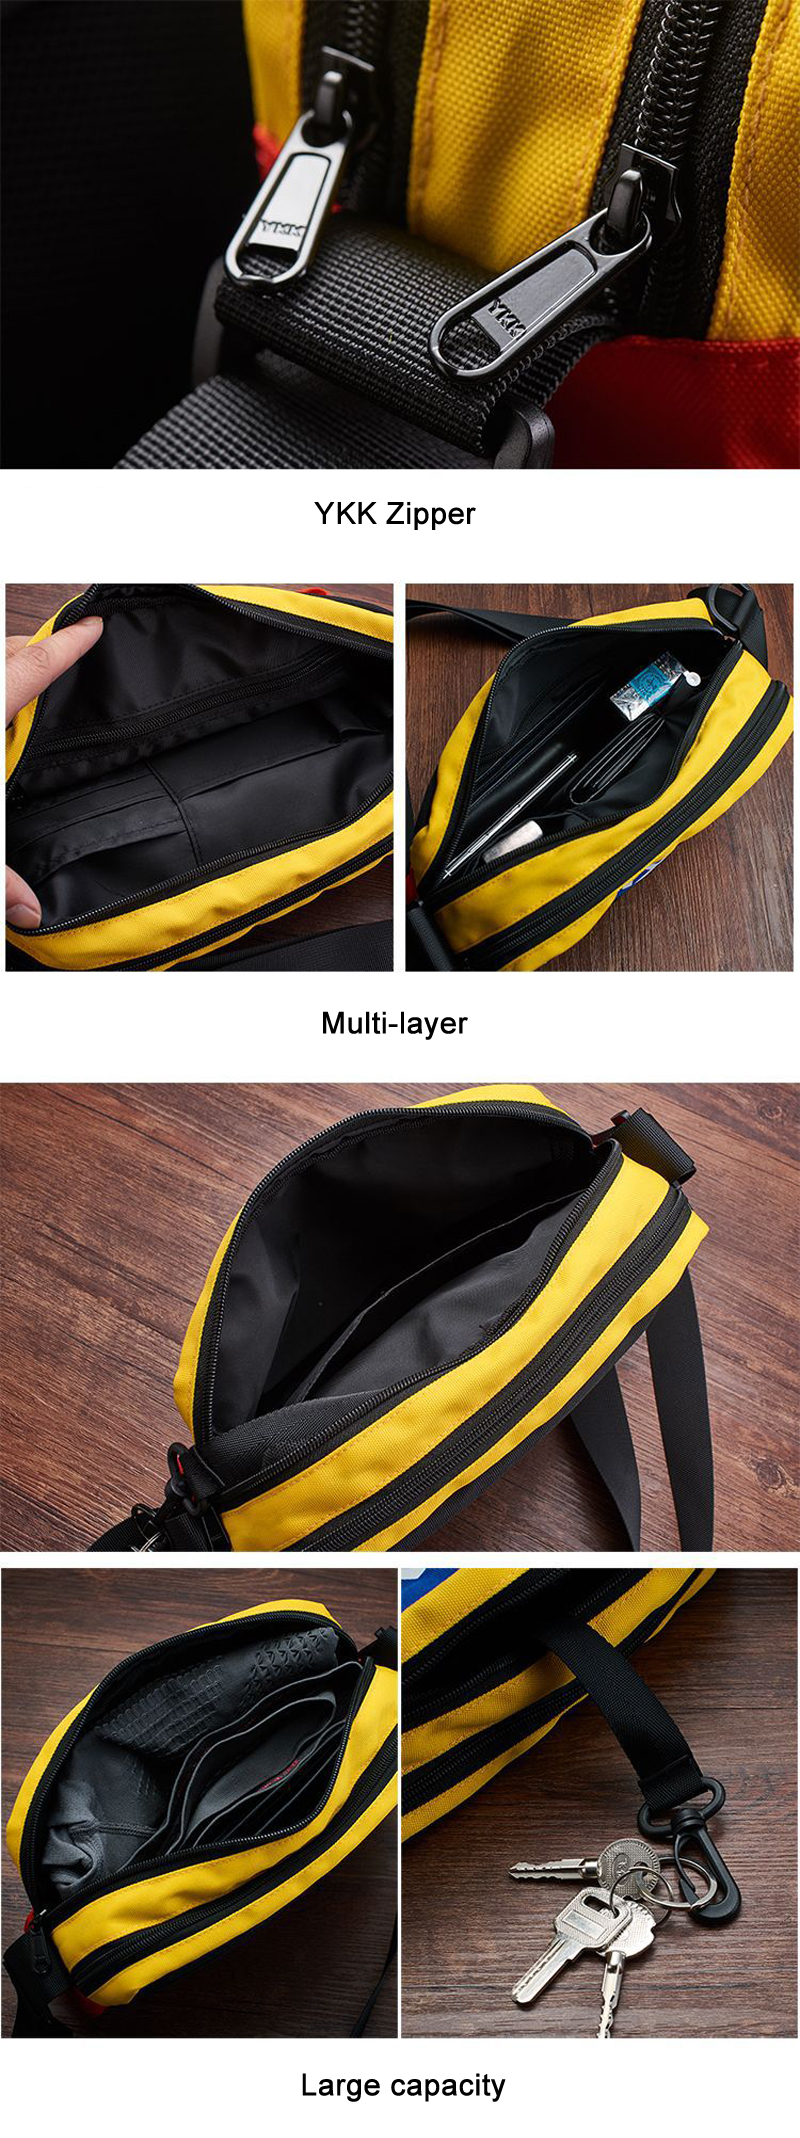 IPReereg-550D-Nylon-Outdoor-Travel-Messenger-Bag-3M-Reflective-Waterproof-Crossbody-Bag-1401440-3